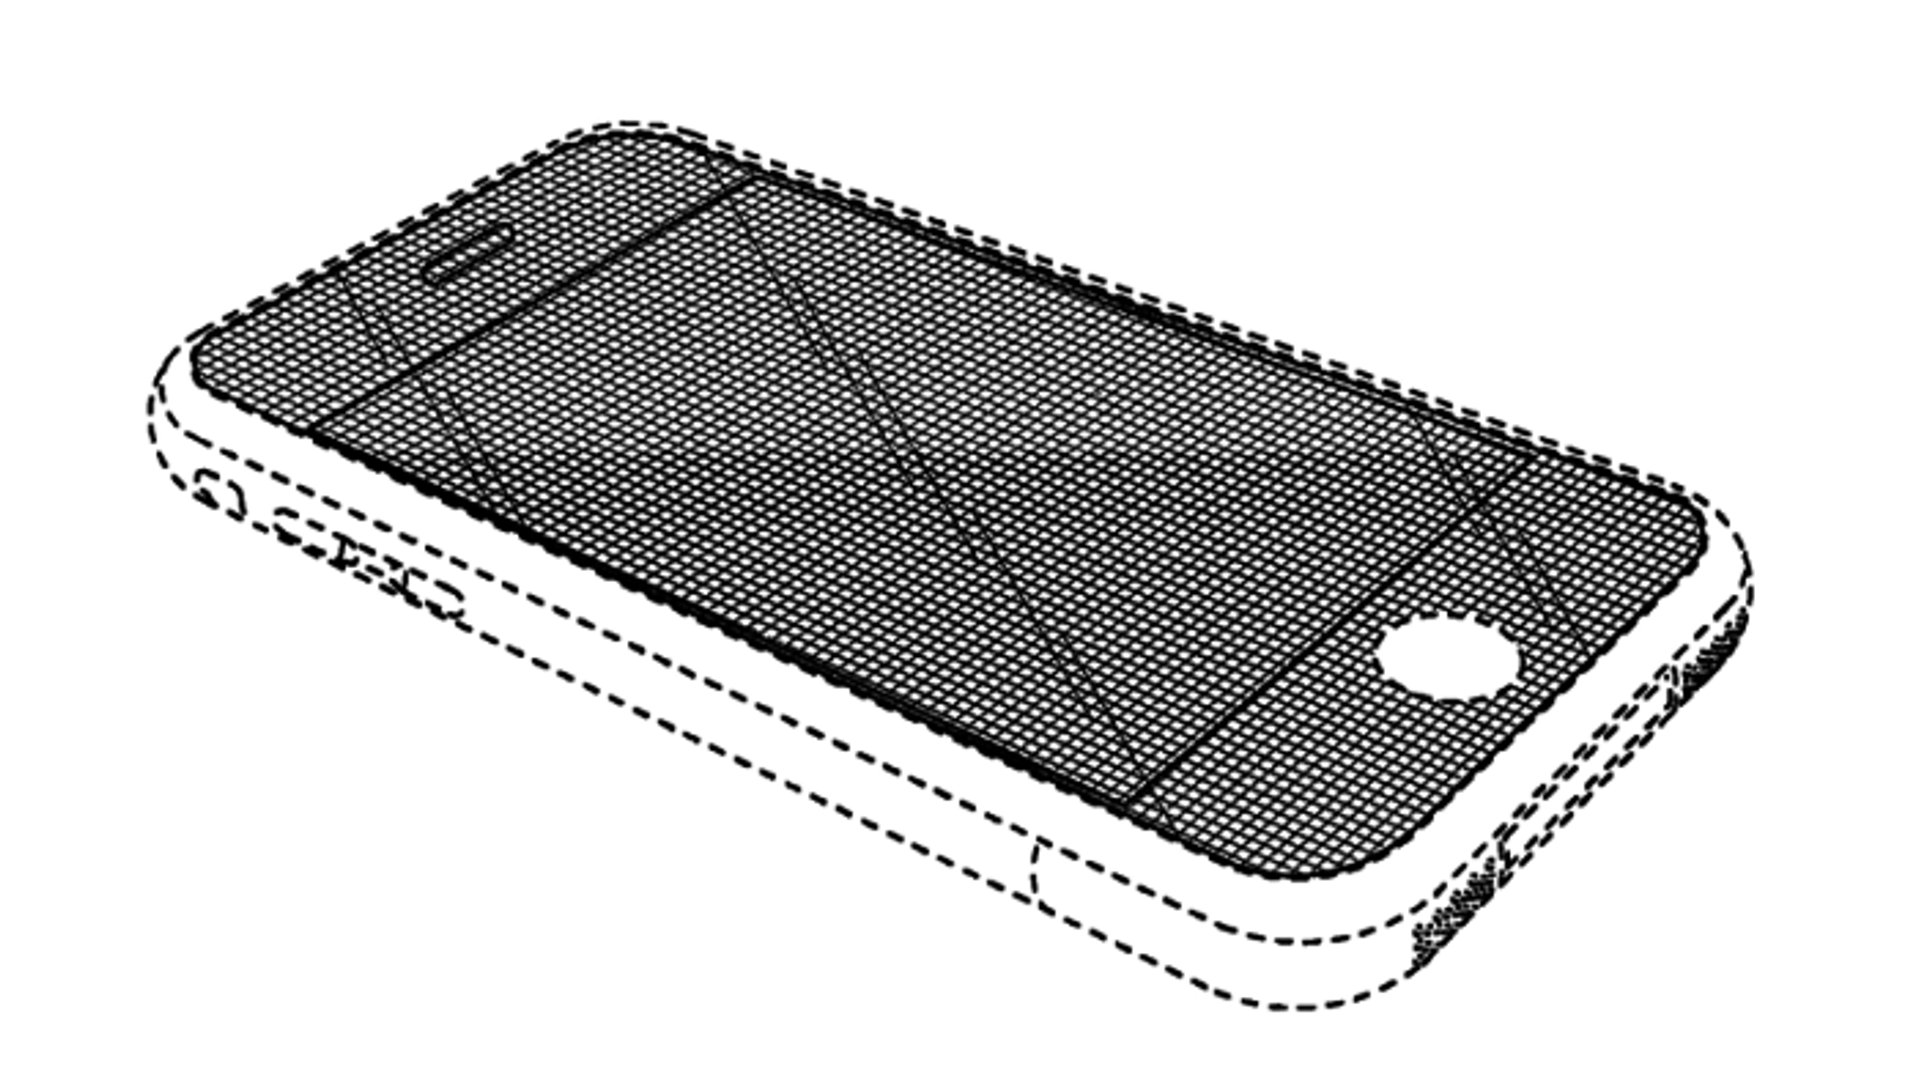 Apple iPhone Design Patent